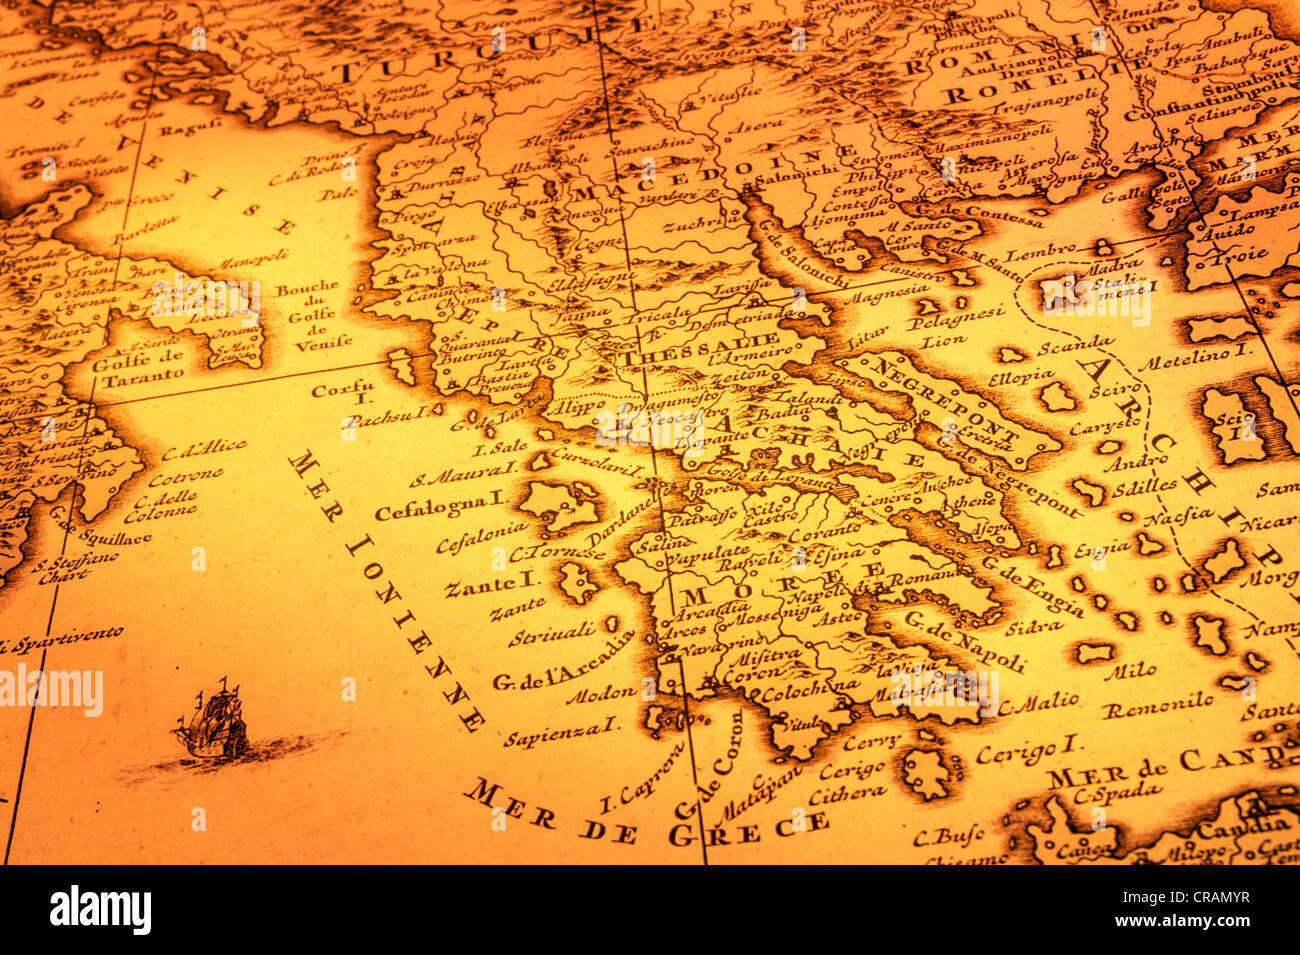 Antica mappa della Grecia, la Macedonia e il sud dell'Italia. Mappa è dal 1680 ed è al di fuori del diritto d'autore. Foto Stock